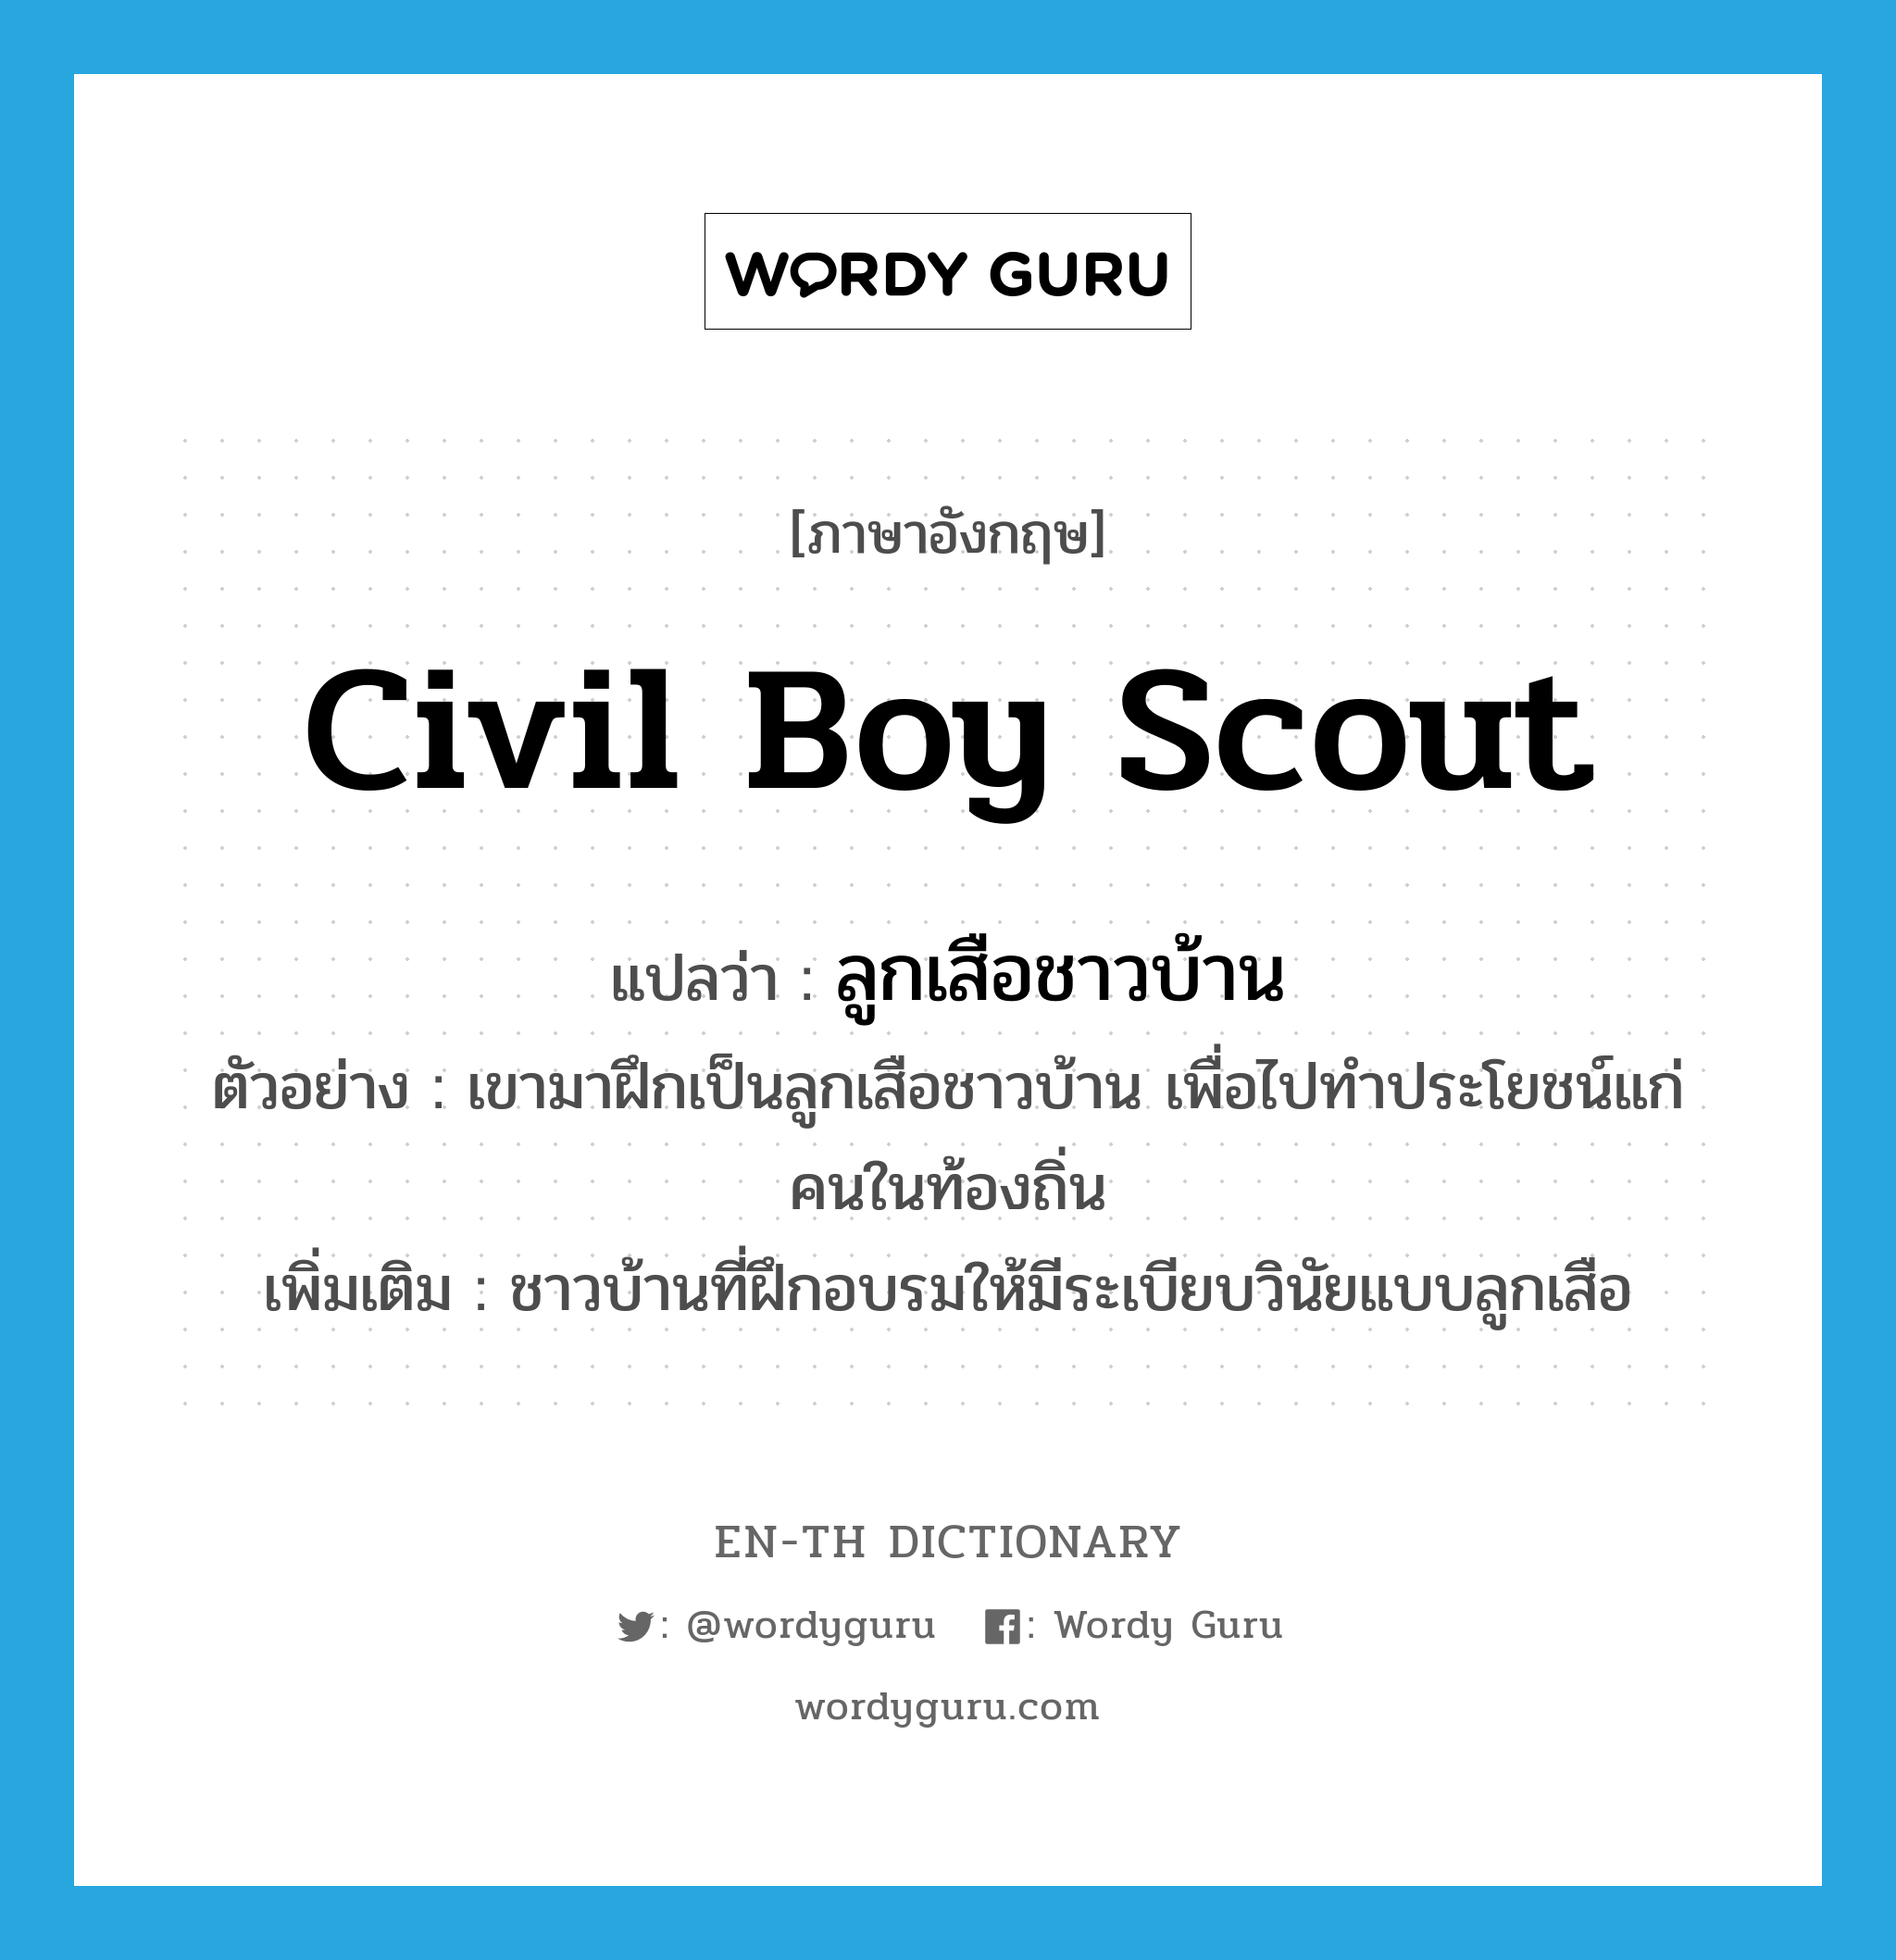 civil boy scout แปลว่า?, คำศัพท์ภาษาอังกฤษ civil boy scout แปลว่า ลูกเสือชาวบ้าน ประเภท N ตัวอย่าง เขามาฝึกเป็นลูกเสือชาวบ้าน เพื่อไปทำประโยชน์แก่คนในท้องถิ่น เพิ่มเติม ชาวบ้านที่ฝึกอบรมให้มีระเบียบวินัยแบบลูกเสือ หมวด N